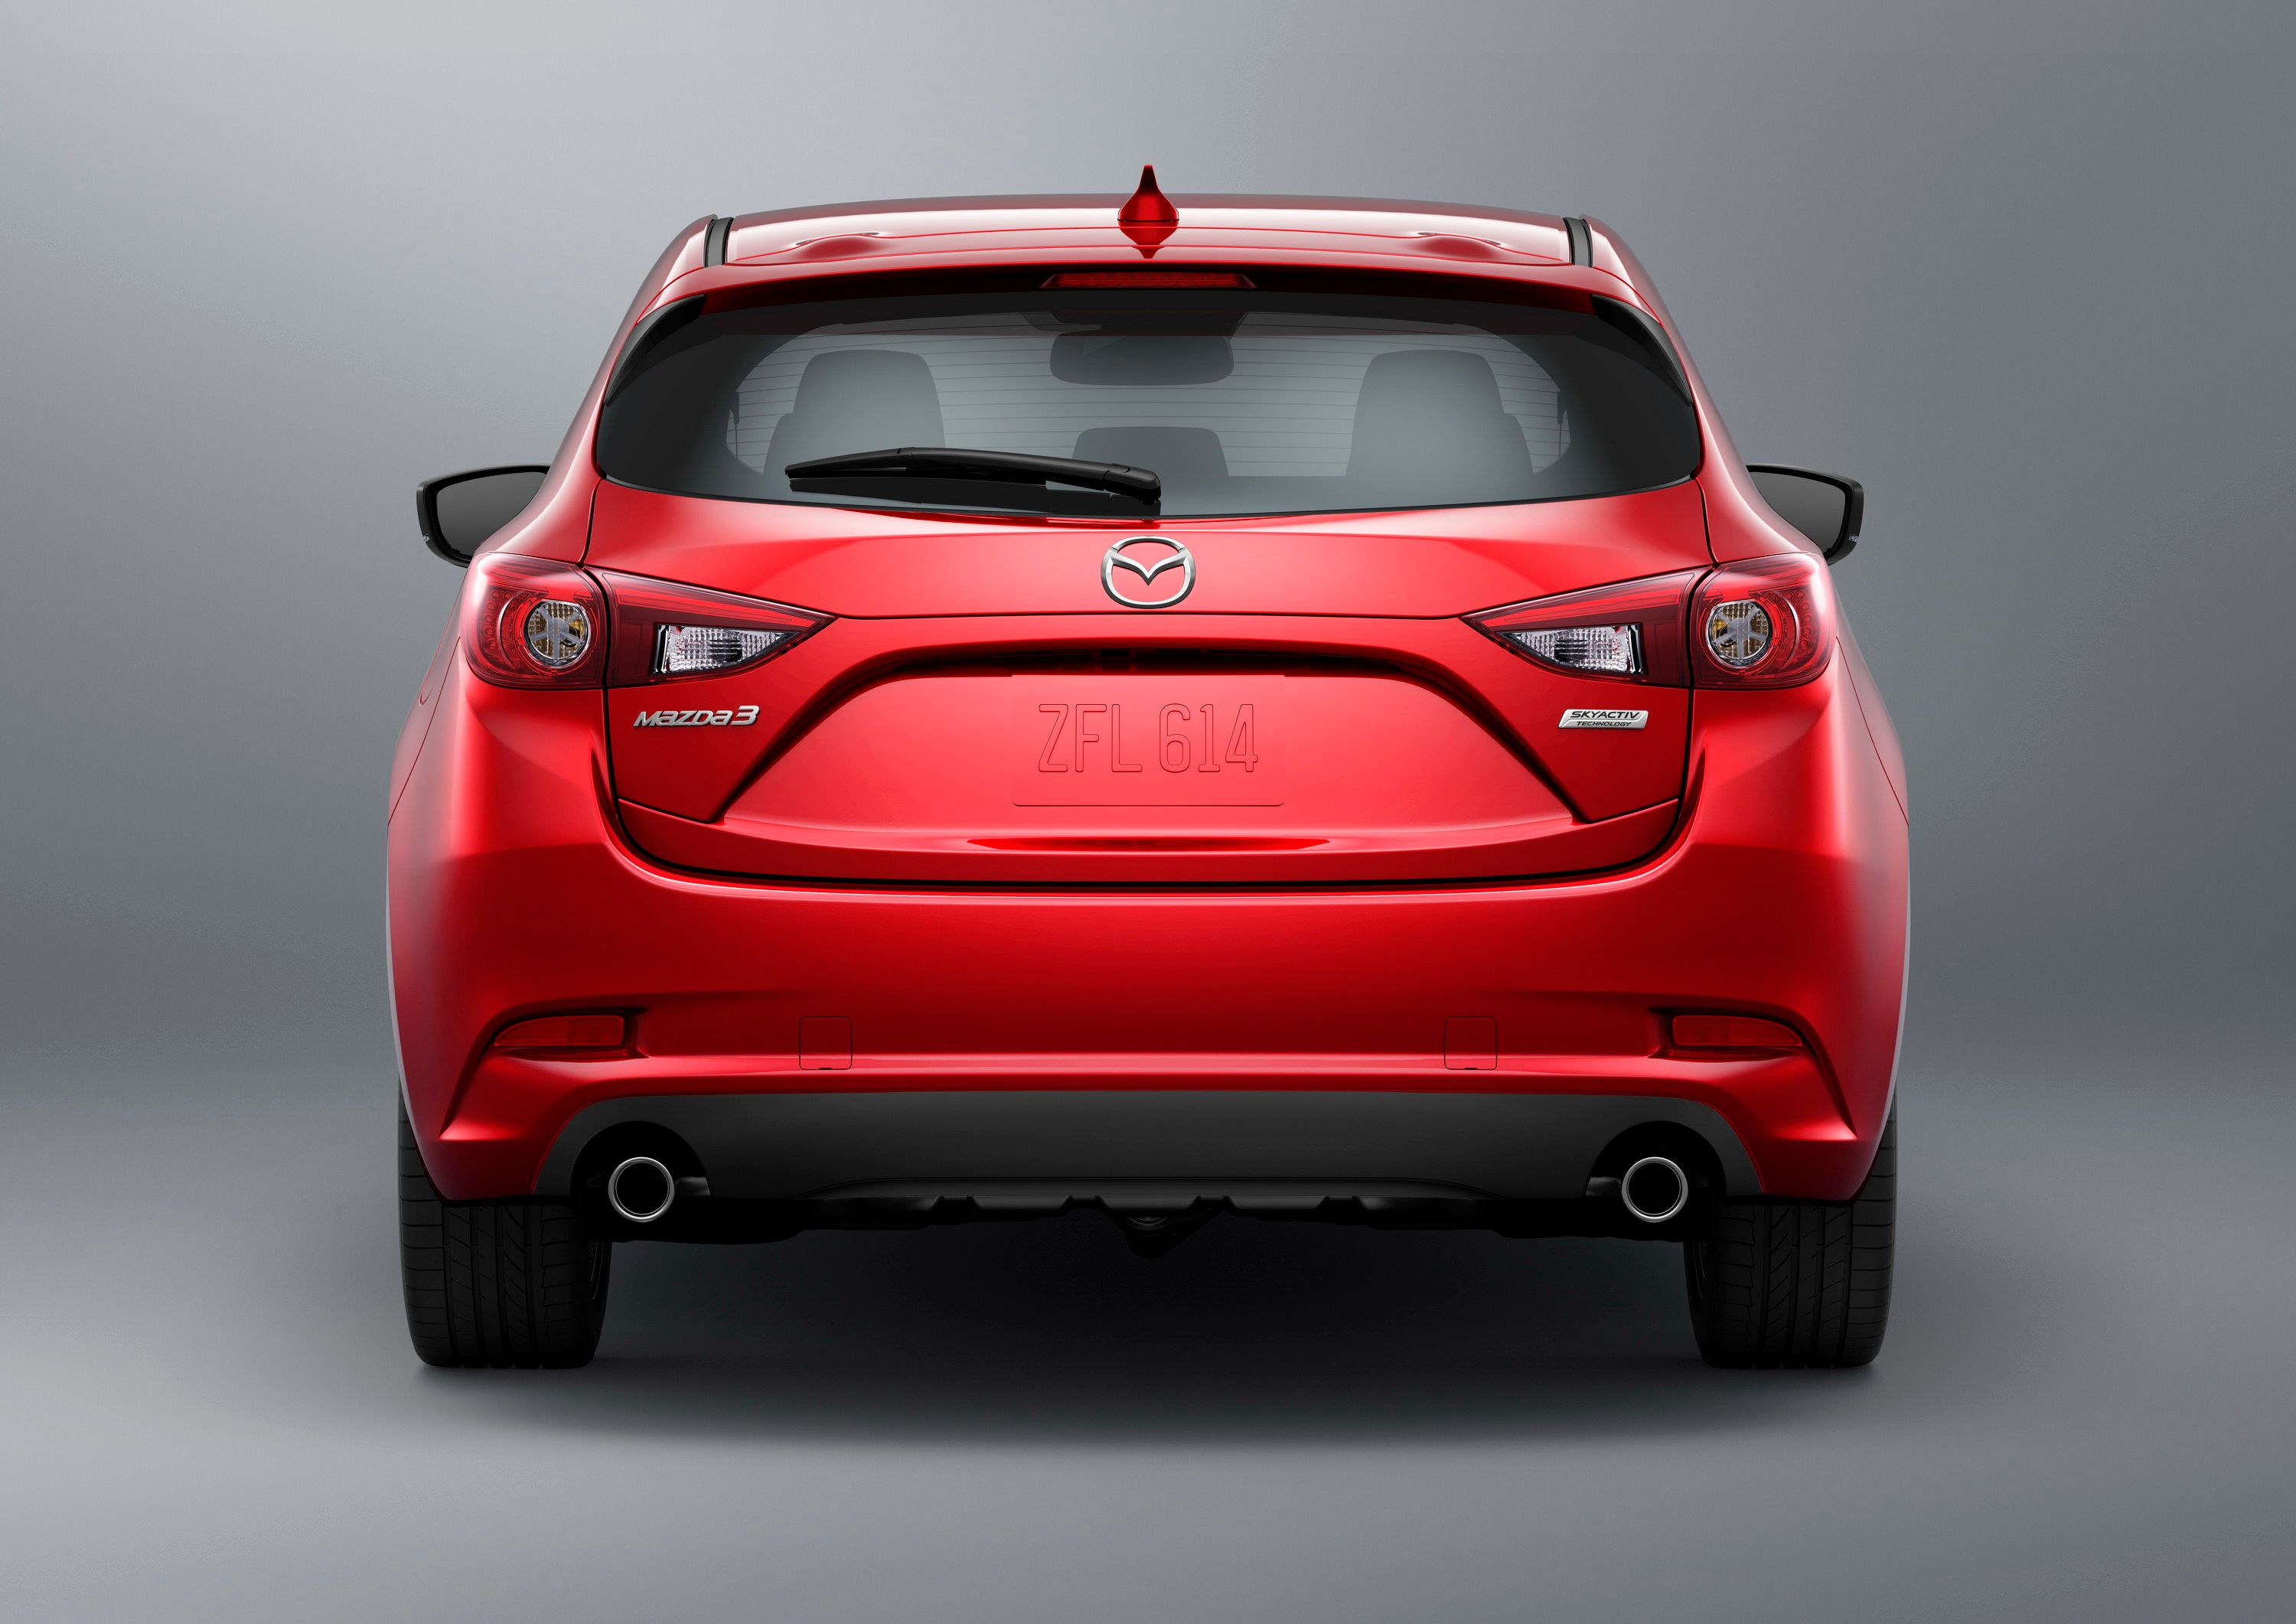 2016 - 2018 Mazda3